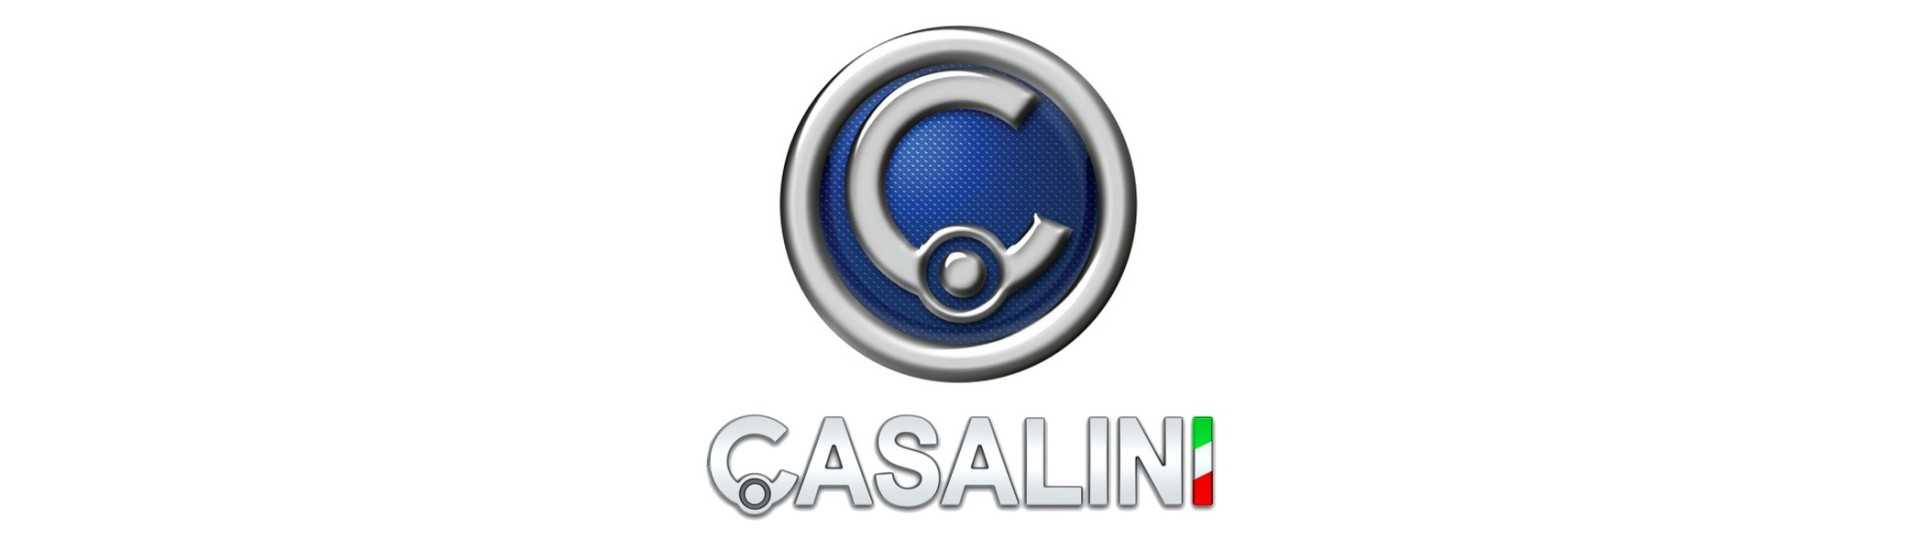 Handbremsleiter für ein Auto ohne Lizenz Casalini